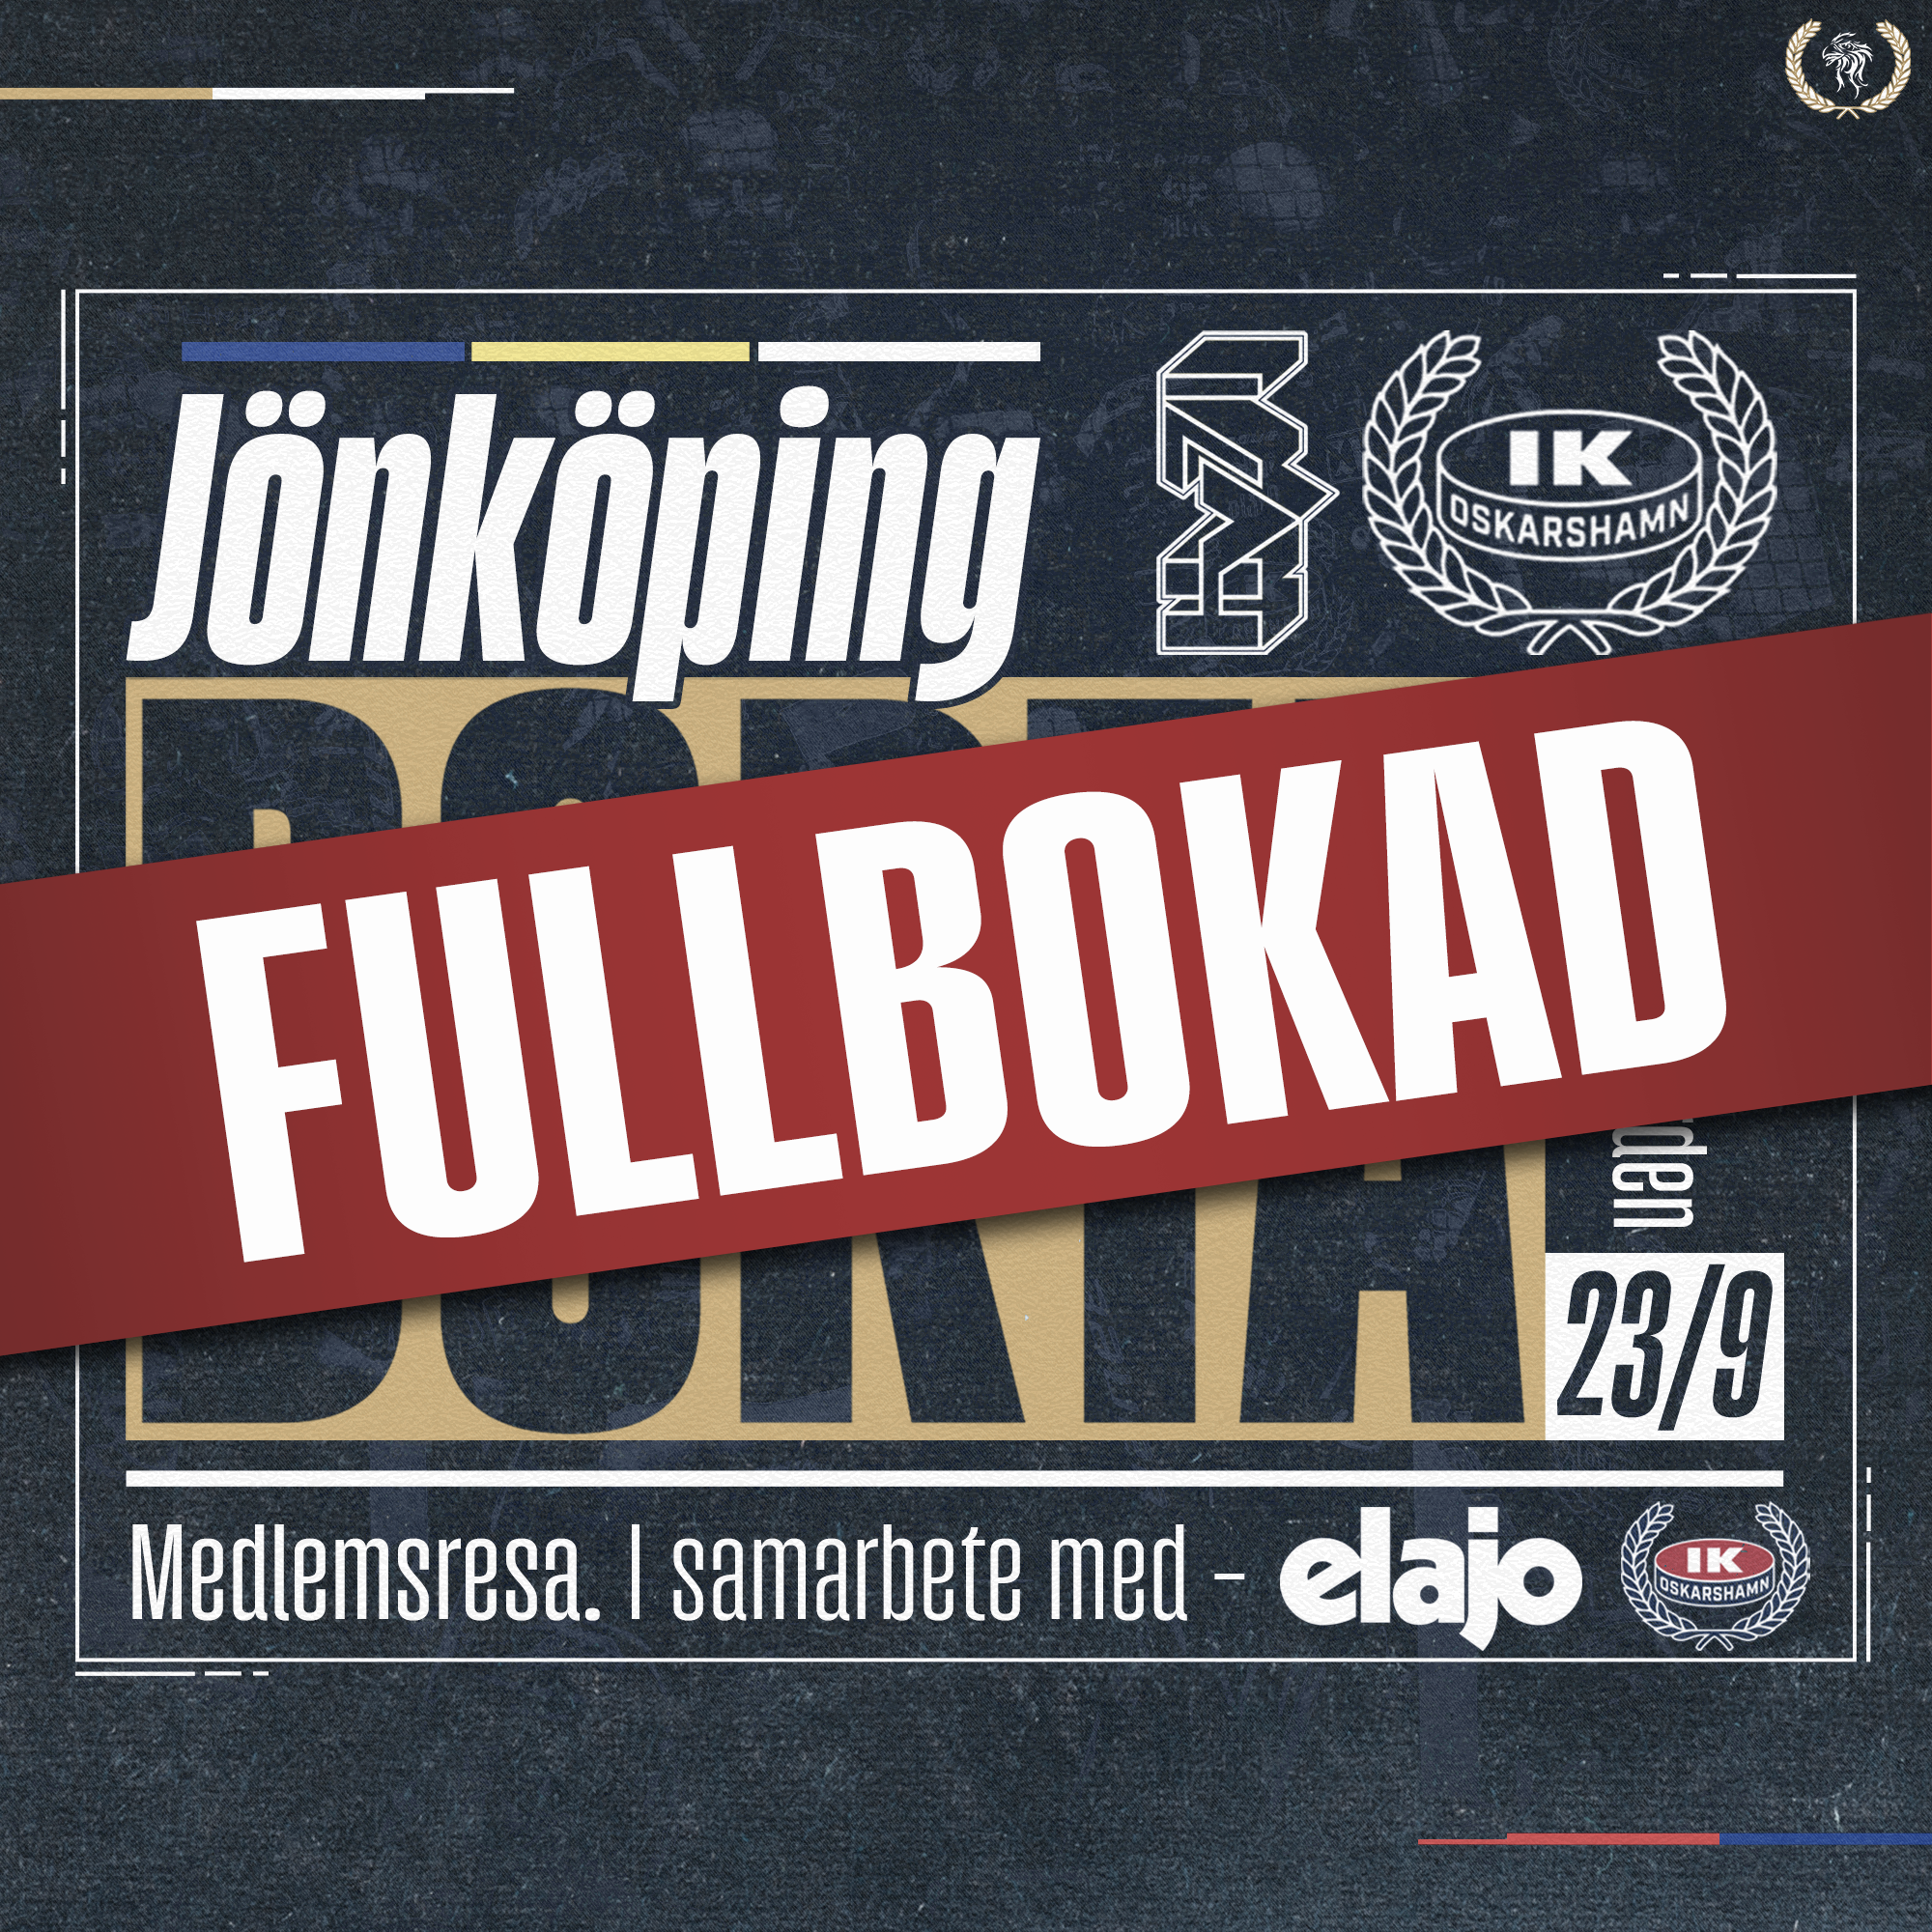 Jönköping medlemsresa 23-9 Fullbokad 4